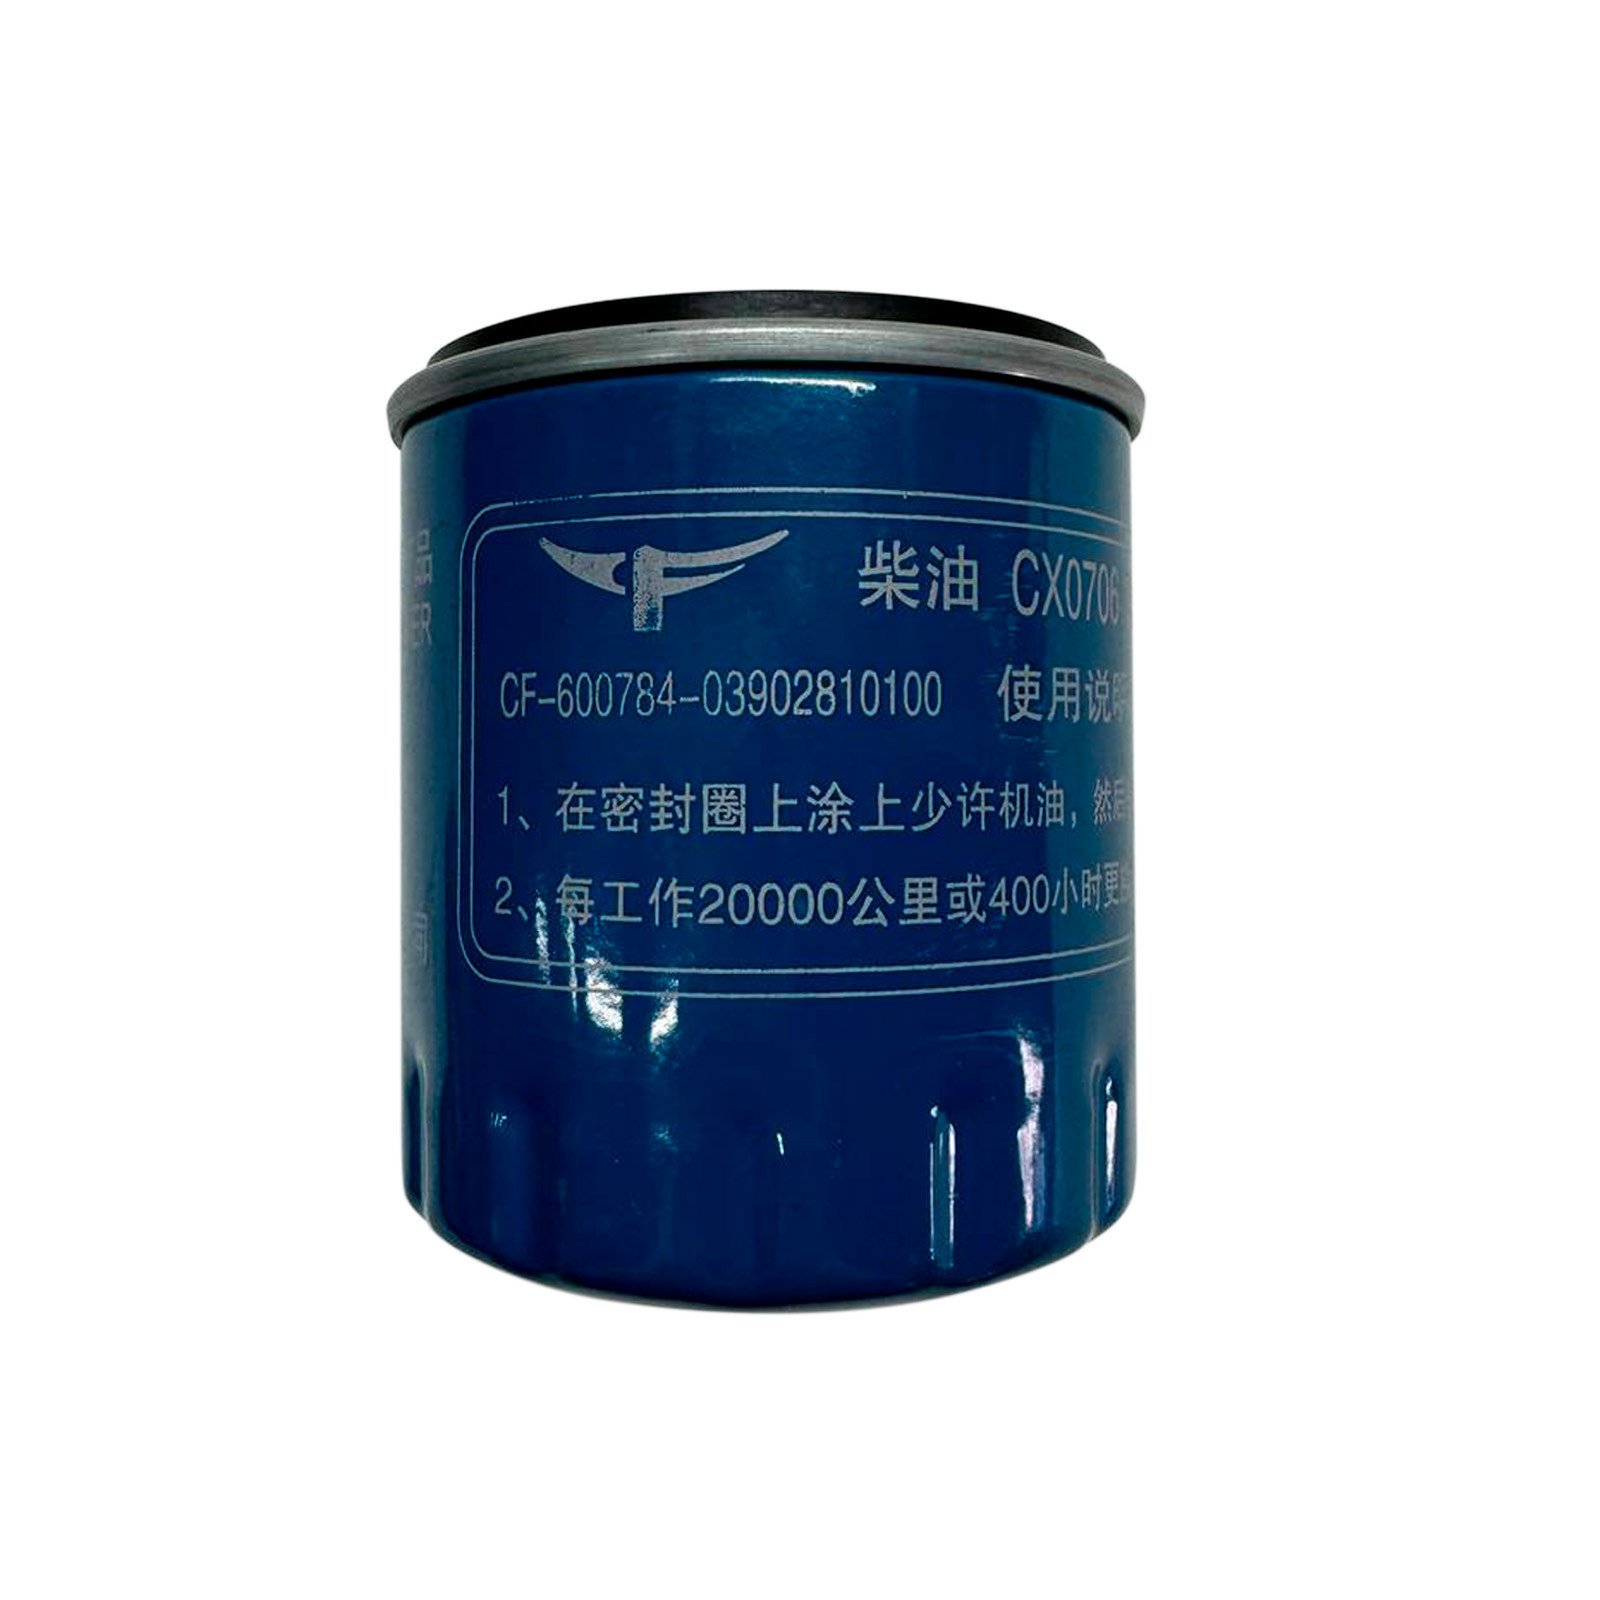 Фильтр топливный CX0706 Changfa